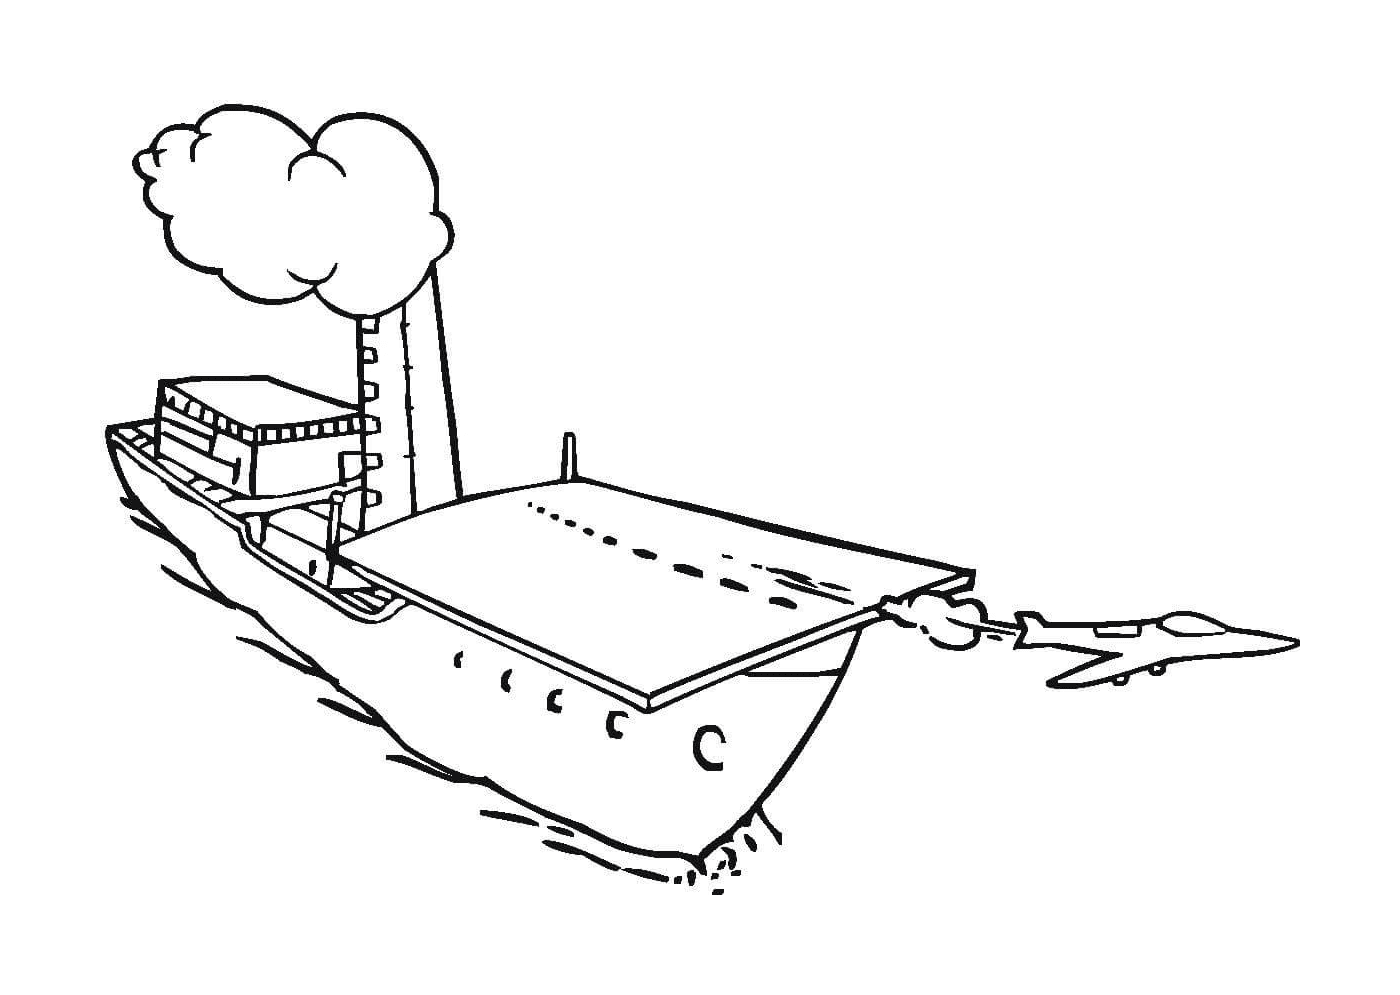  Una barca sull'acqua 